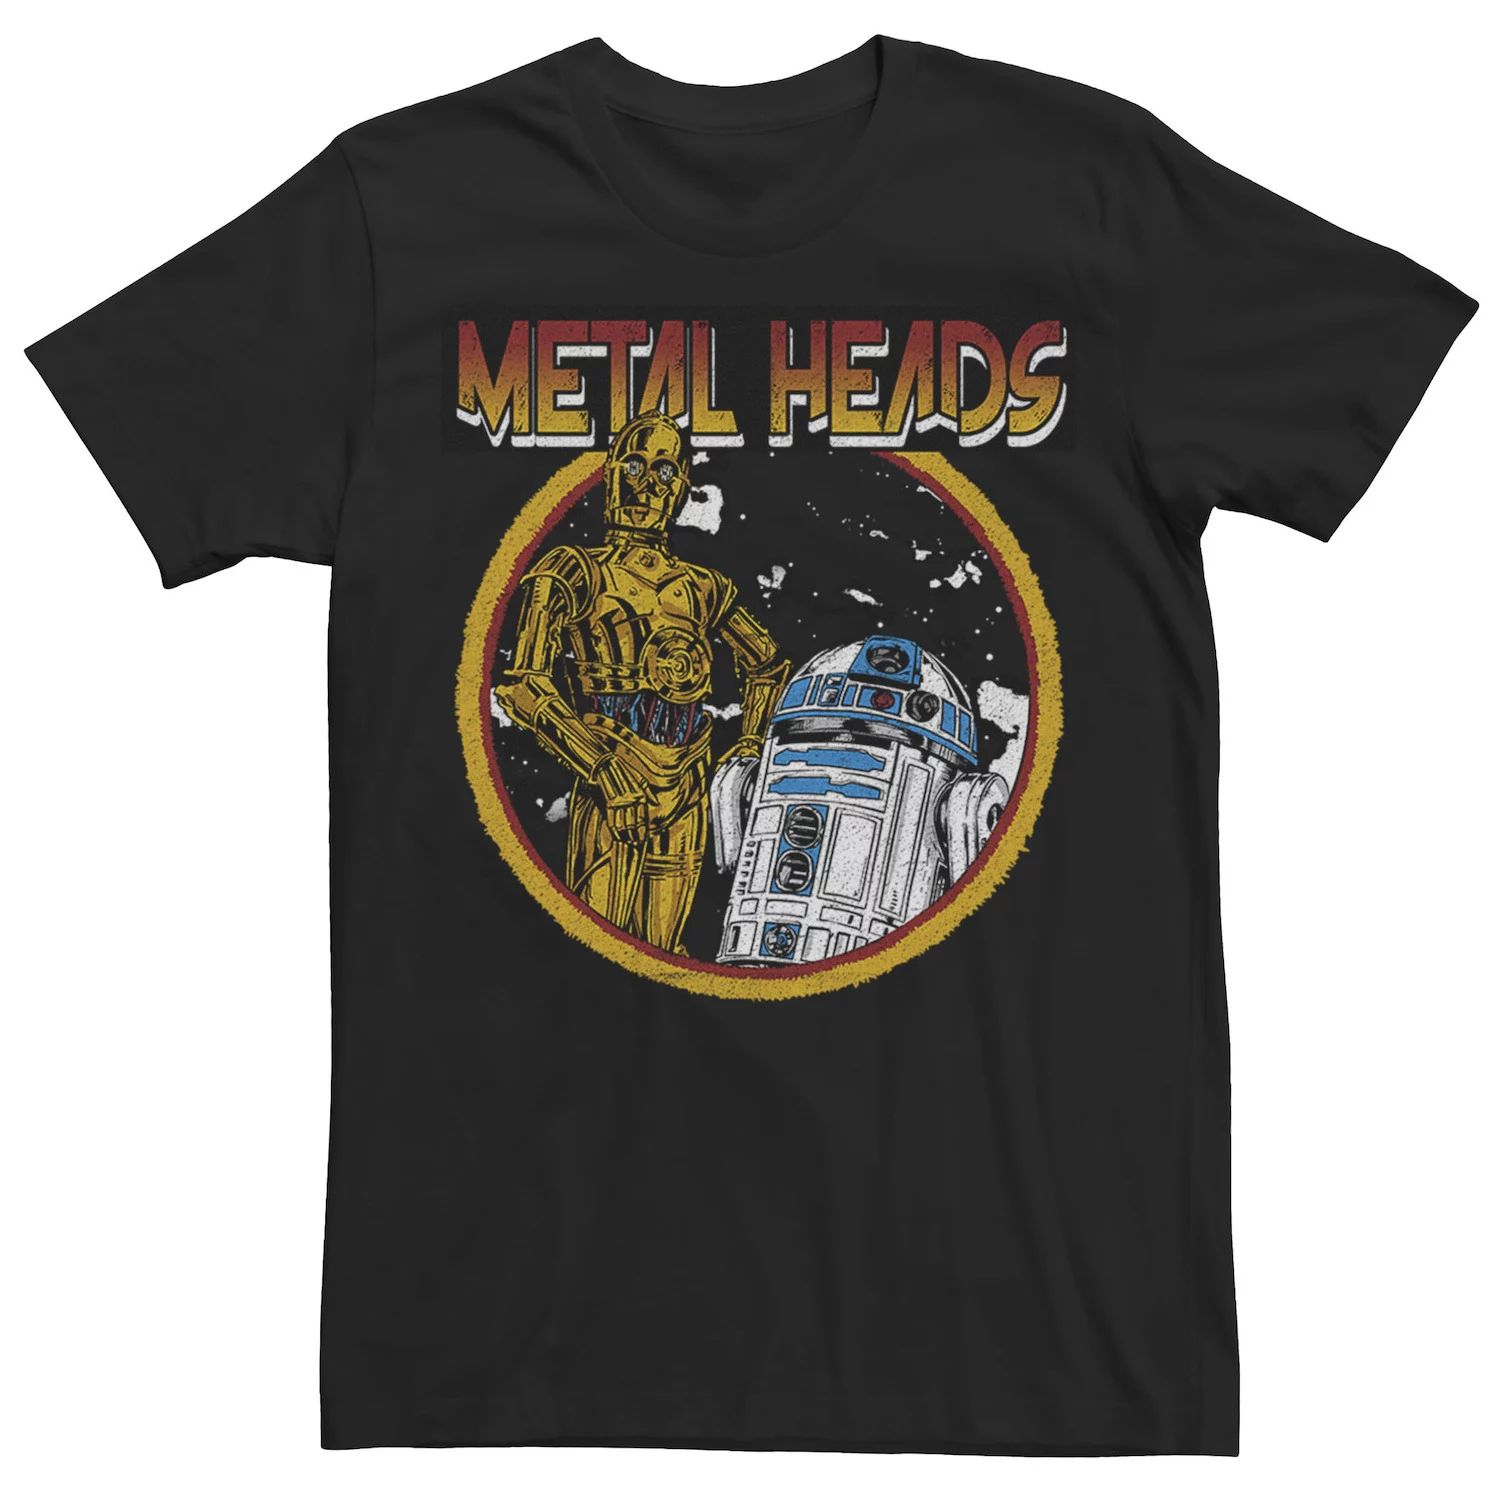 Мужская футболка с металлической головой Droids Star Wars